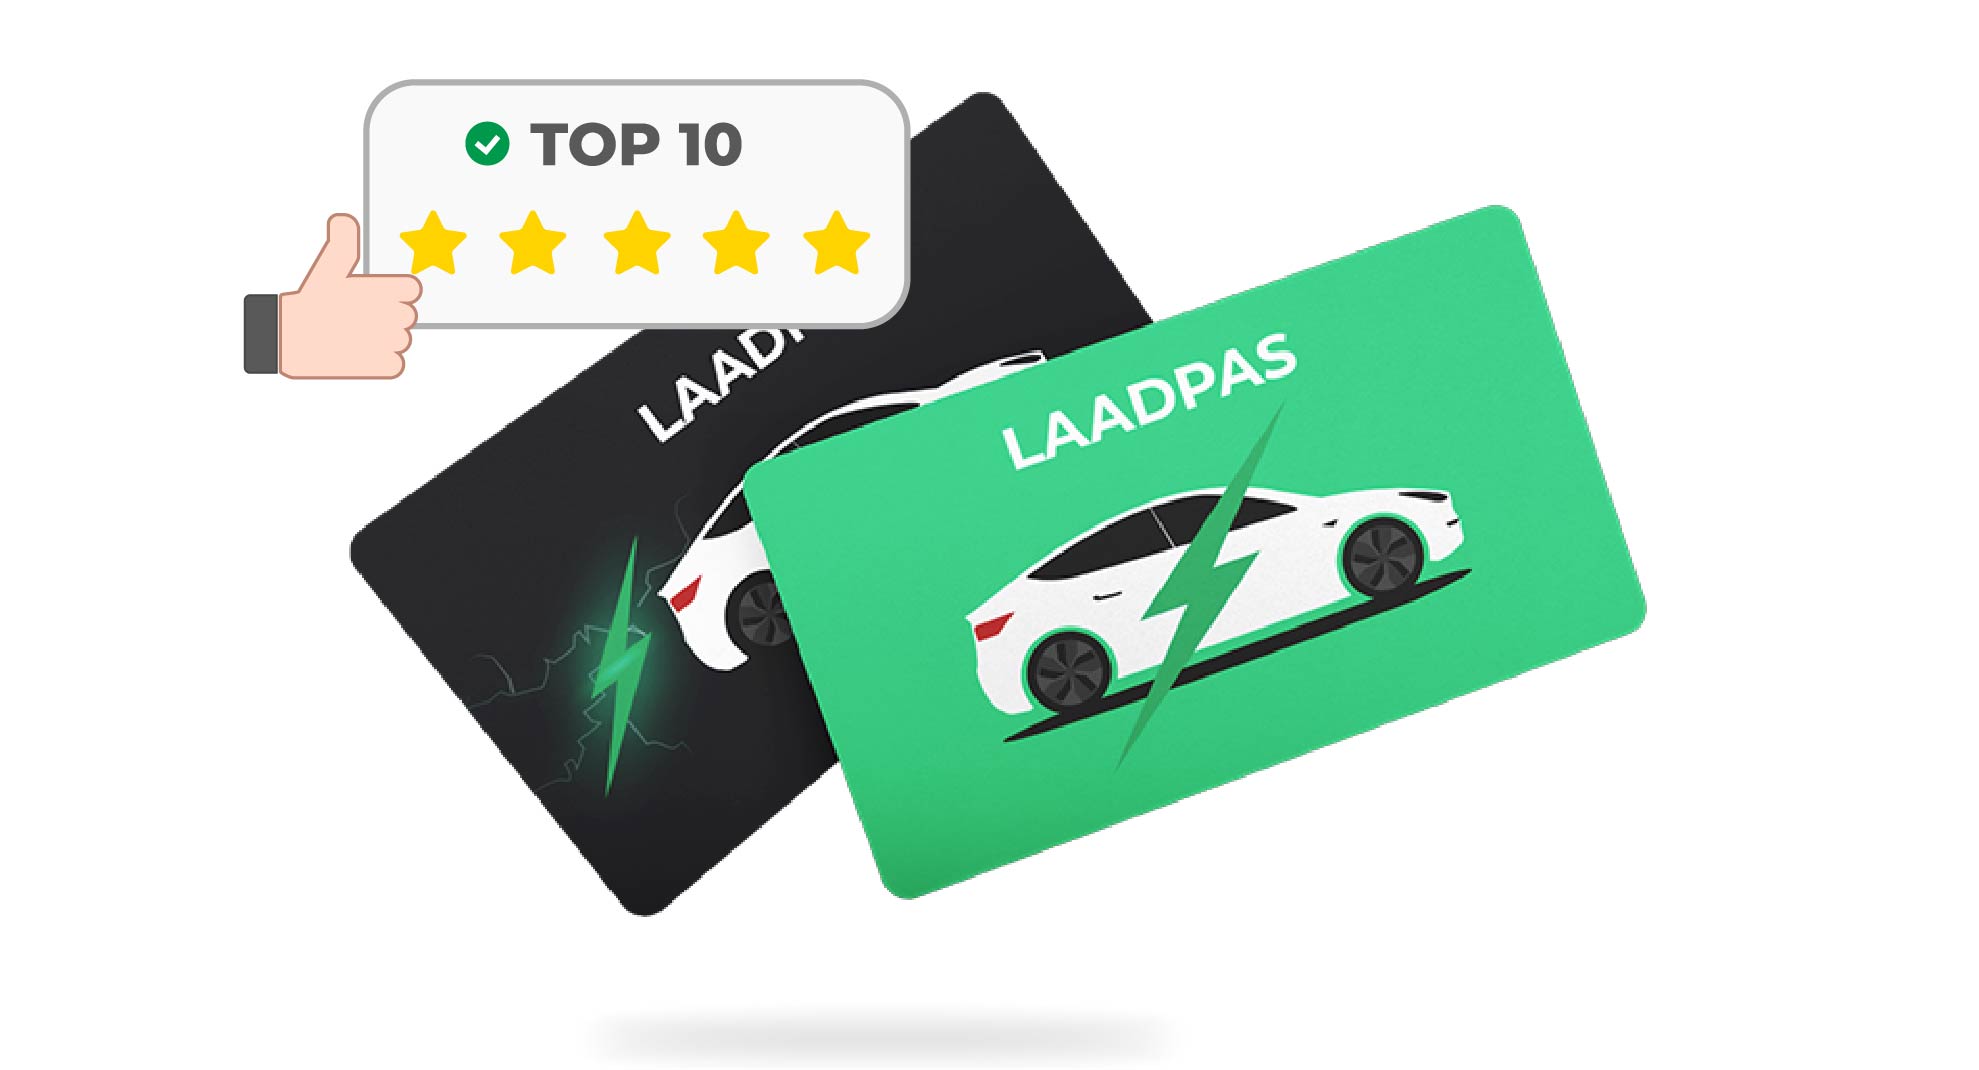 laadpas-top-10